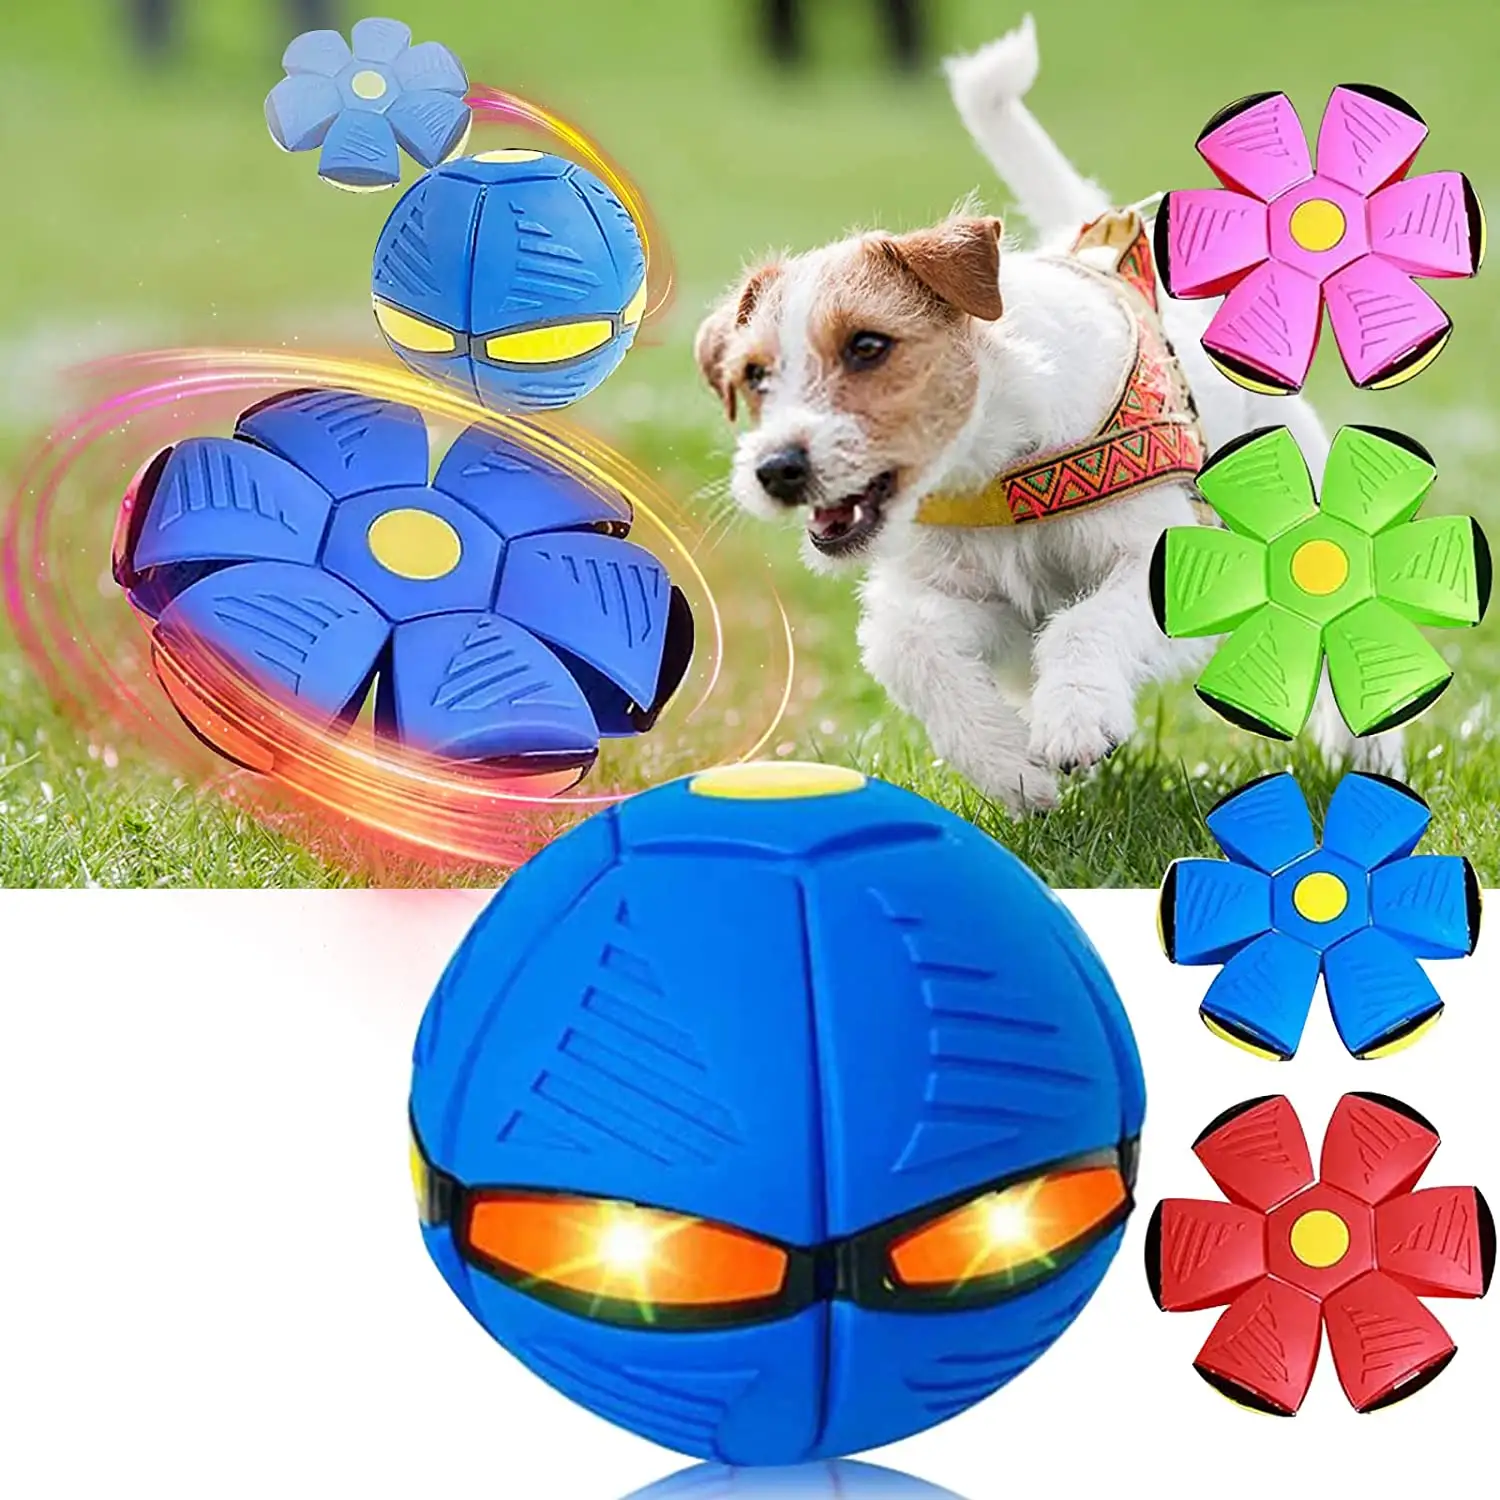 Nuovo arrivo giocattoli magici per cani da masticare per animali domestici giocattolo da addestramento per animali domestici palla volante per esterni giocattoli interattivi per cani per cani